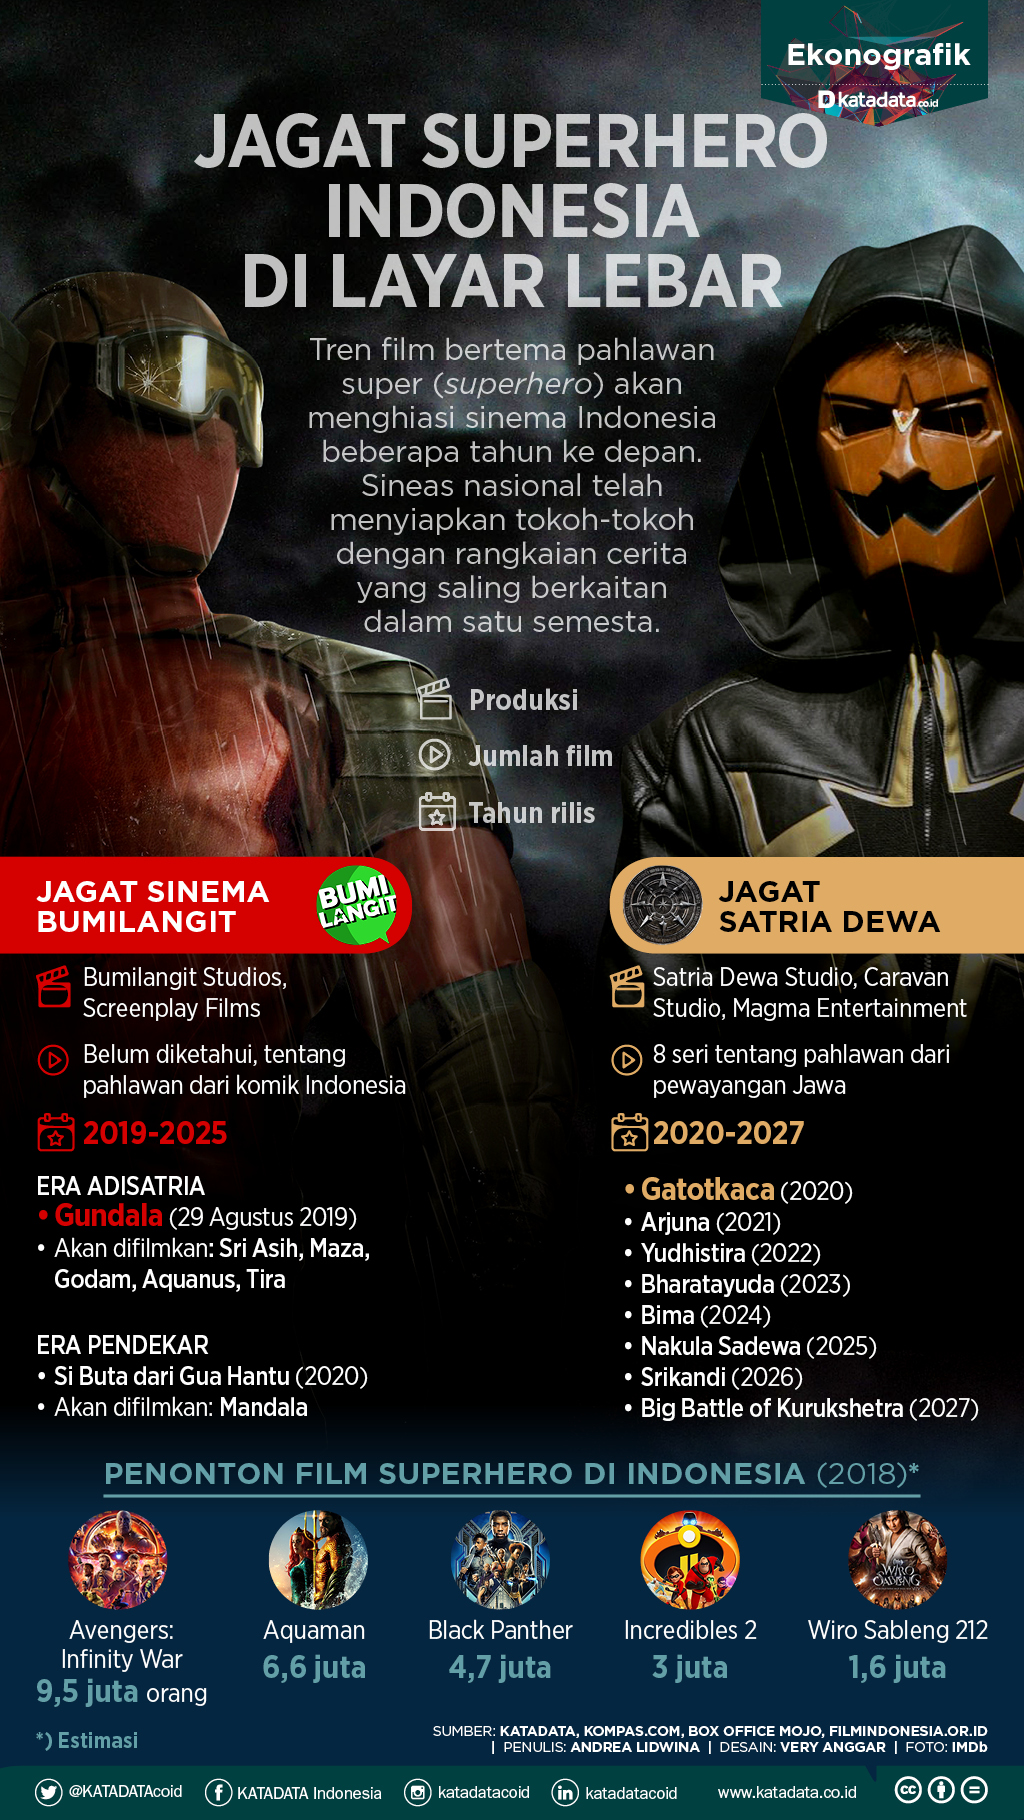 jagat superhero indonesia di layar lebar